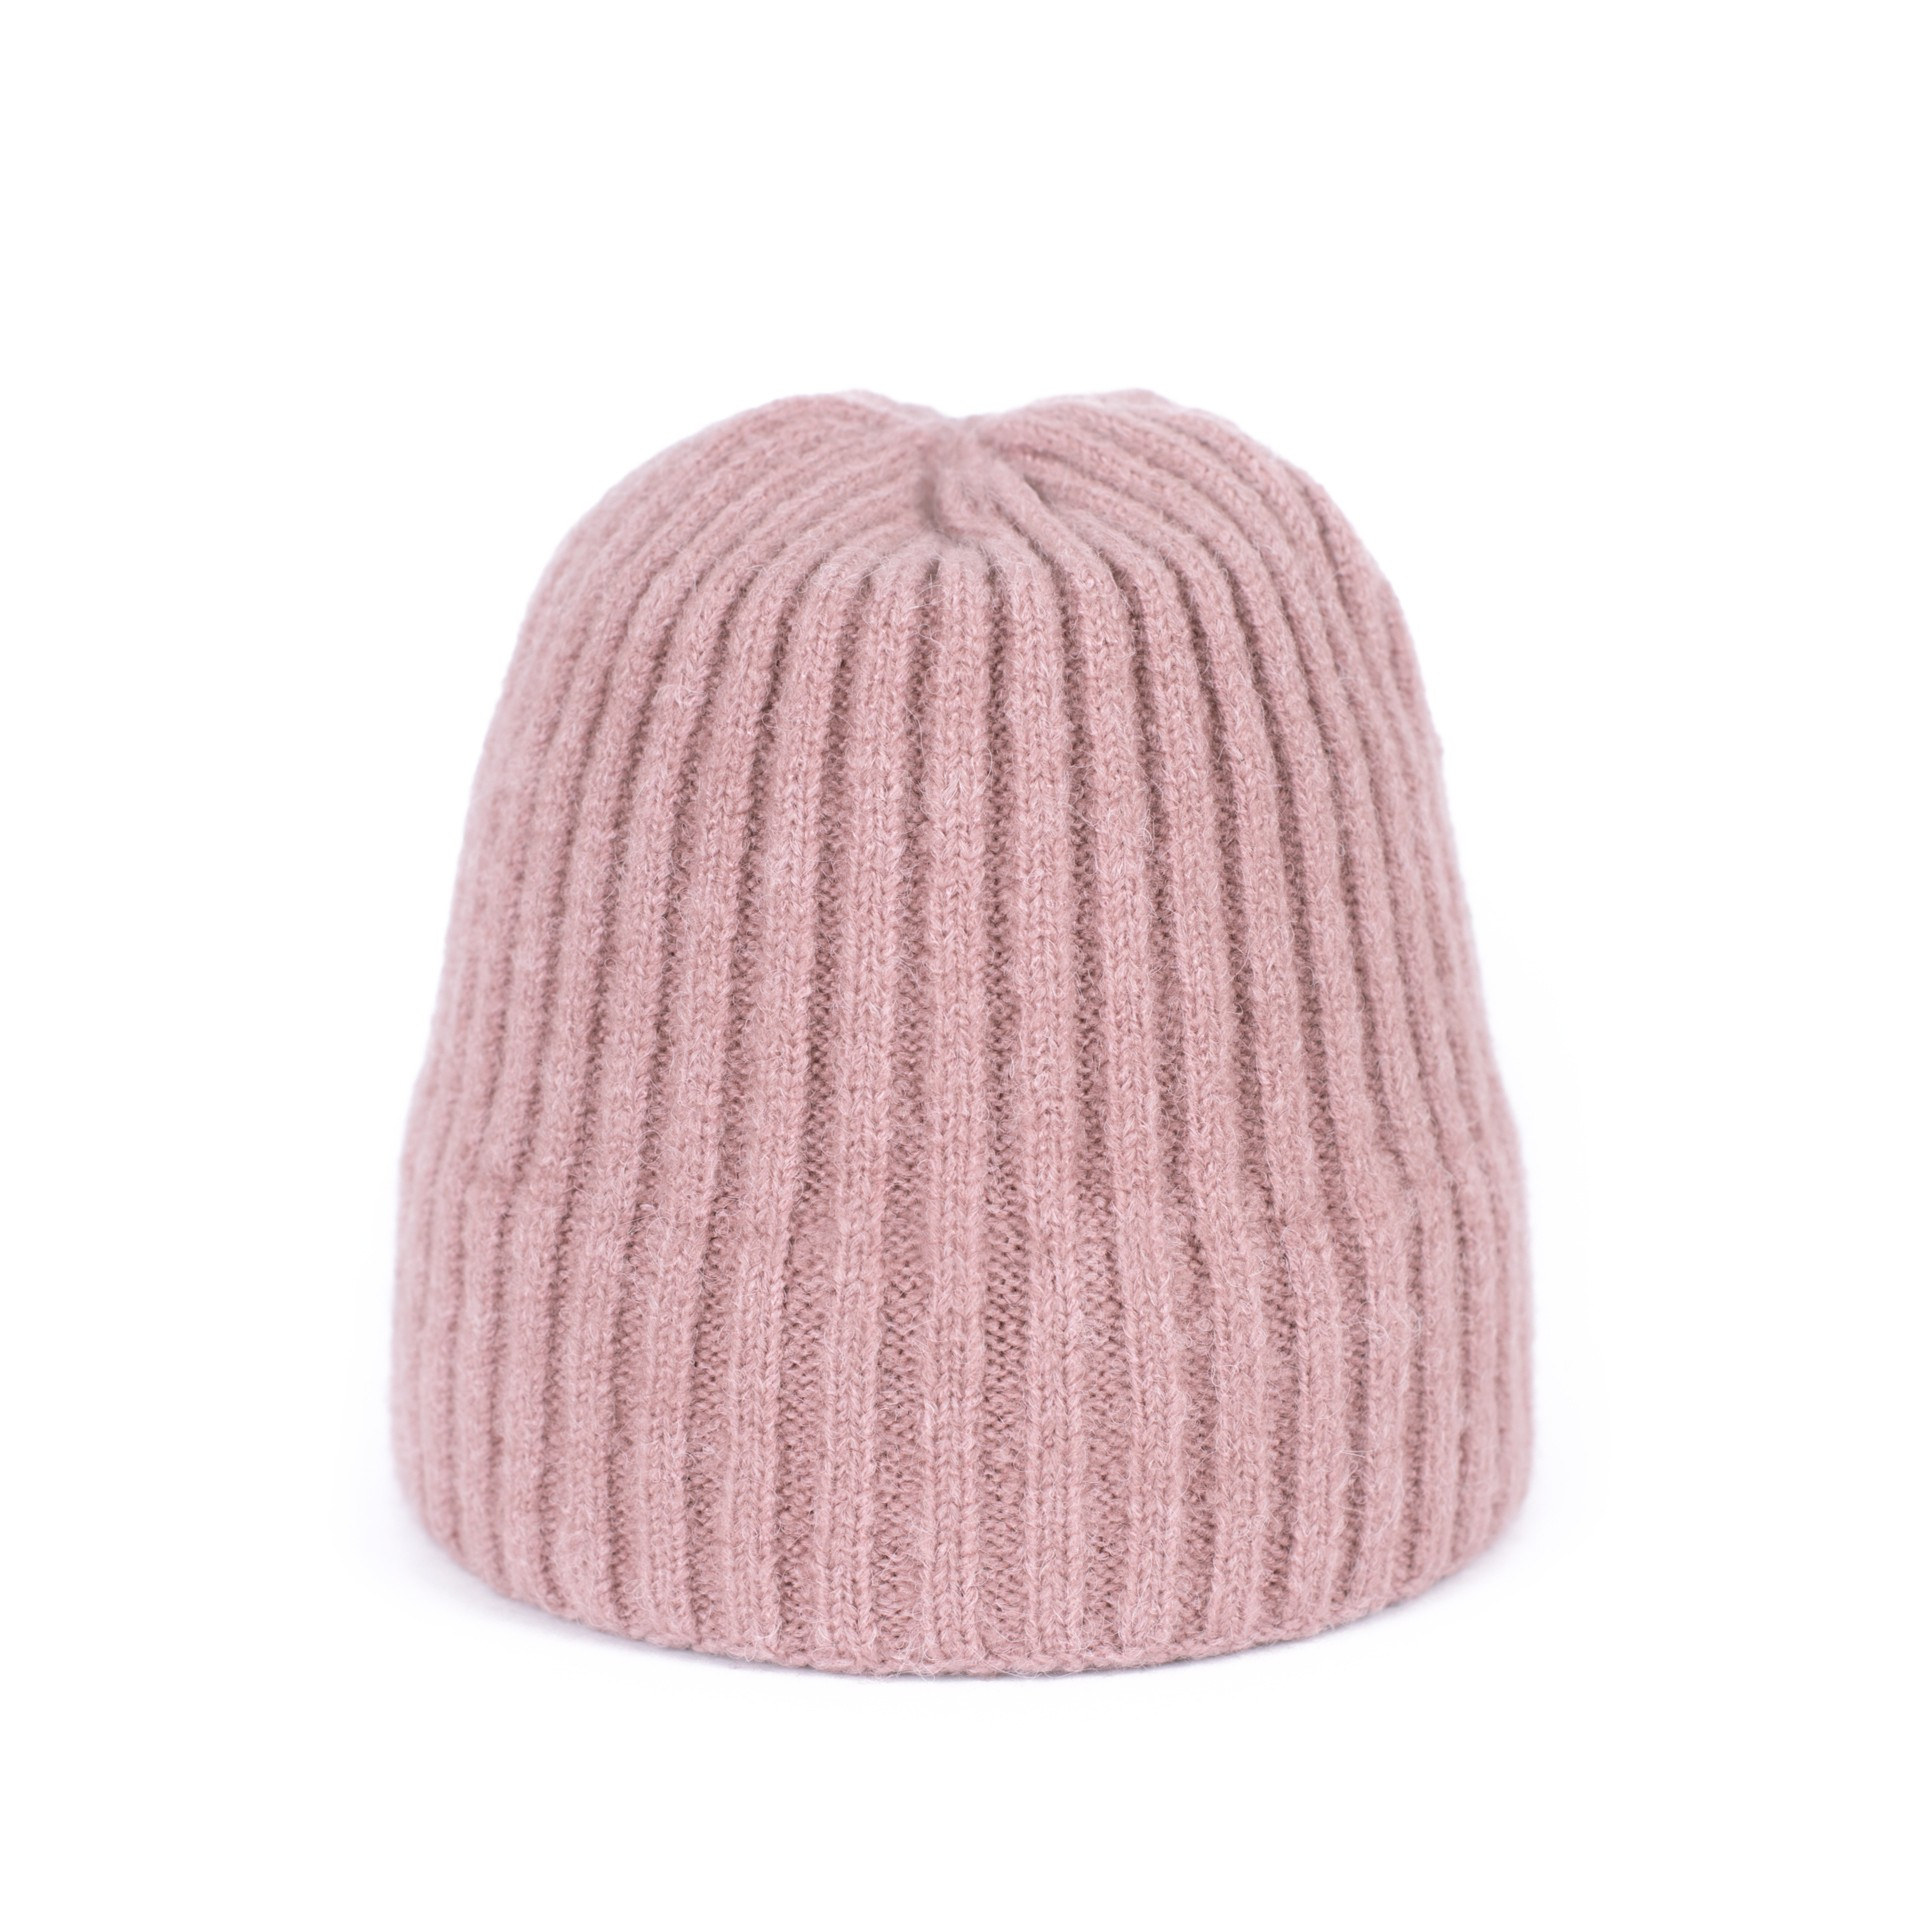 Čepice Hat model 16597431 Light Pink UNI - Art of polo